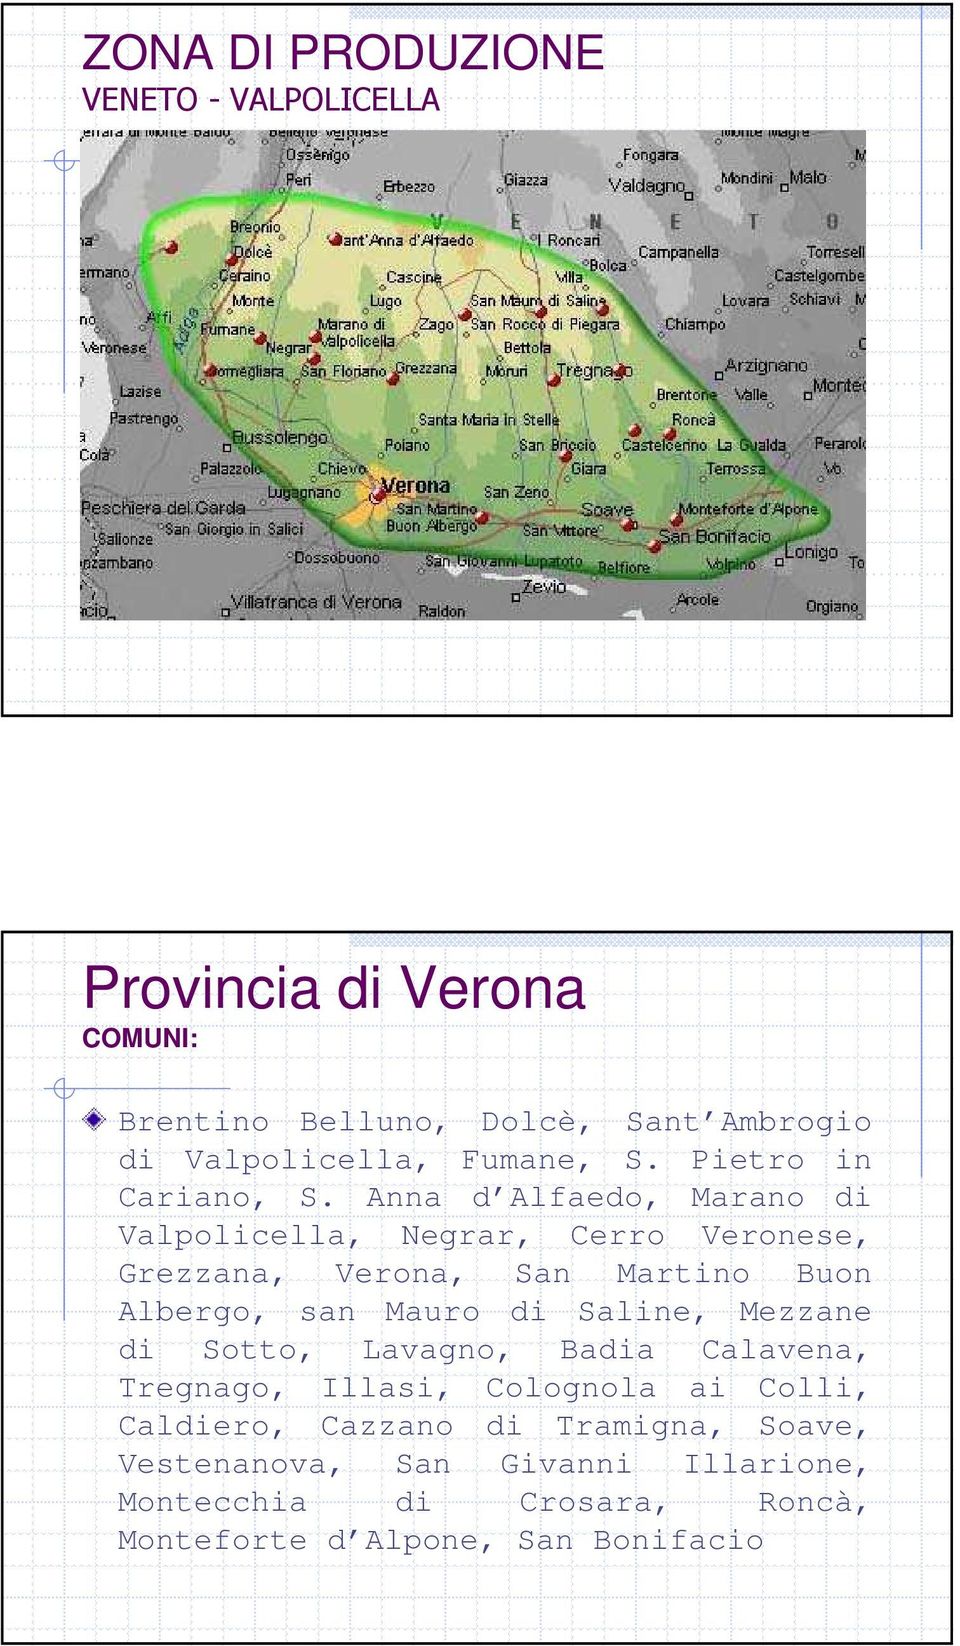 Anna d Alfaedo, Marano di Valpolicella, Negrar, Cerro Veronese, Grezzana, Verona, San Martino Buon Albergo, san Mauro di